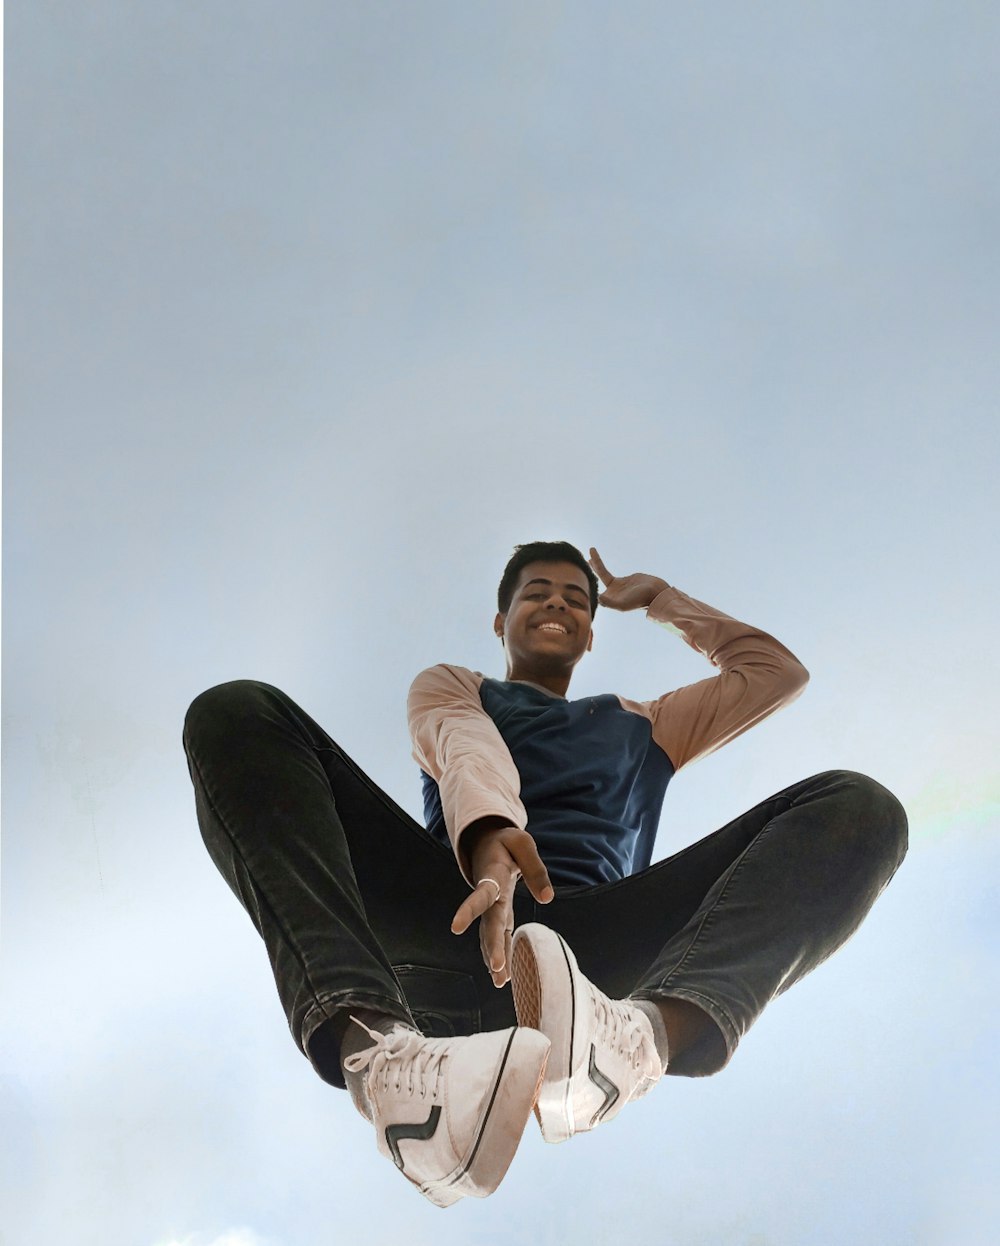 점프하는 남자의 로우 앵글 사진